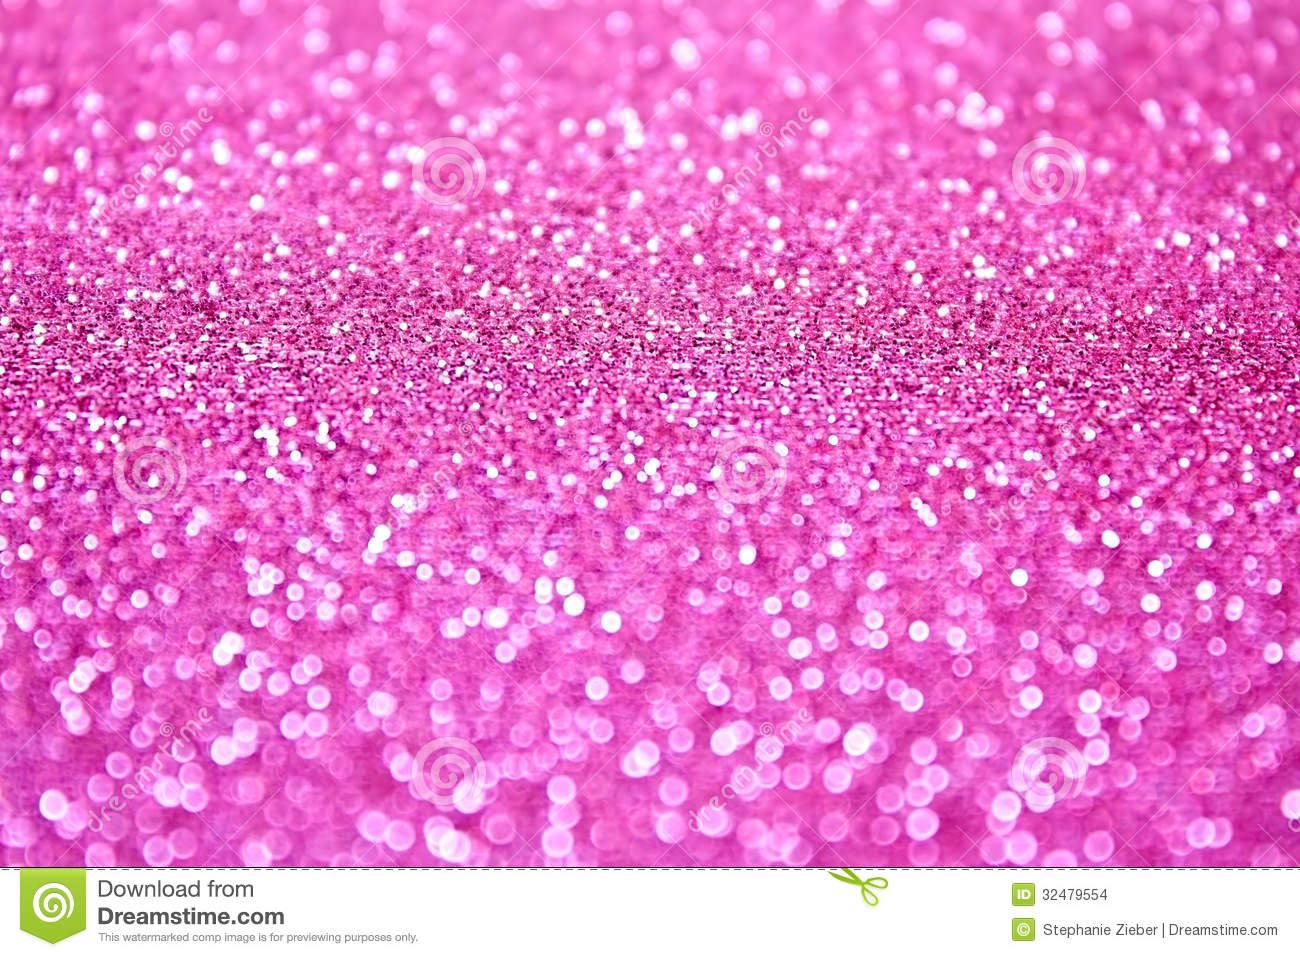 Pink Glitter Wallpaper   HD Wallpapers Pretty 1300x957